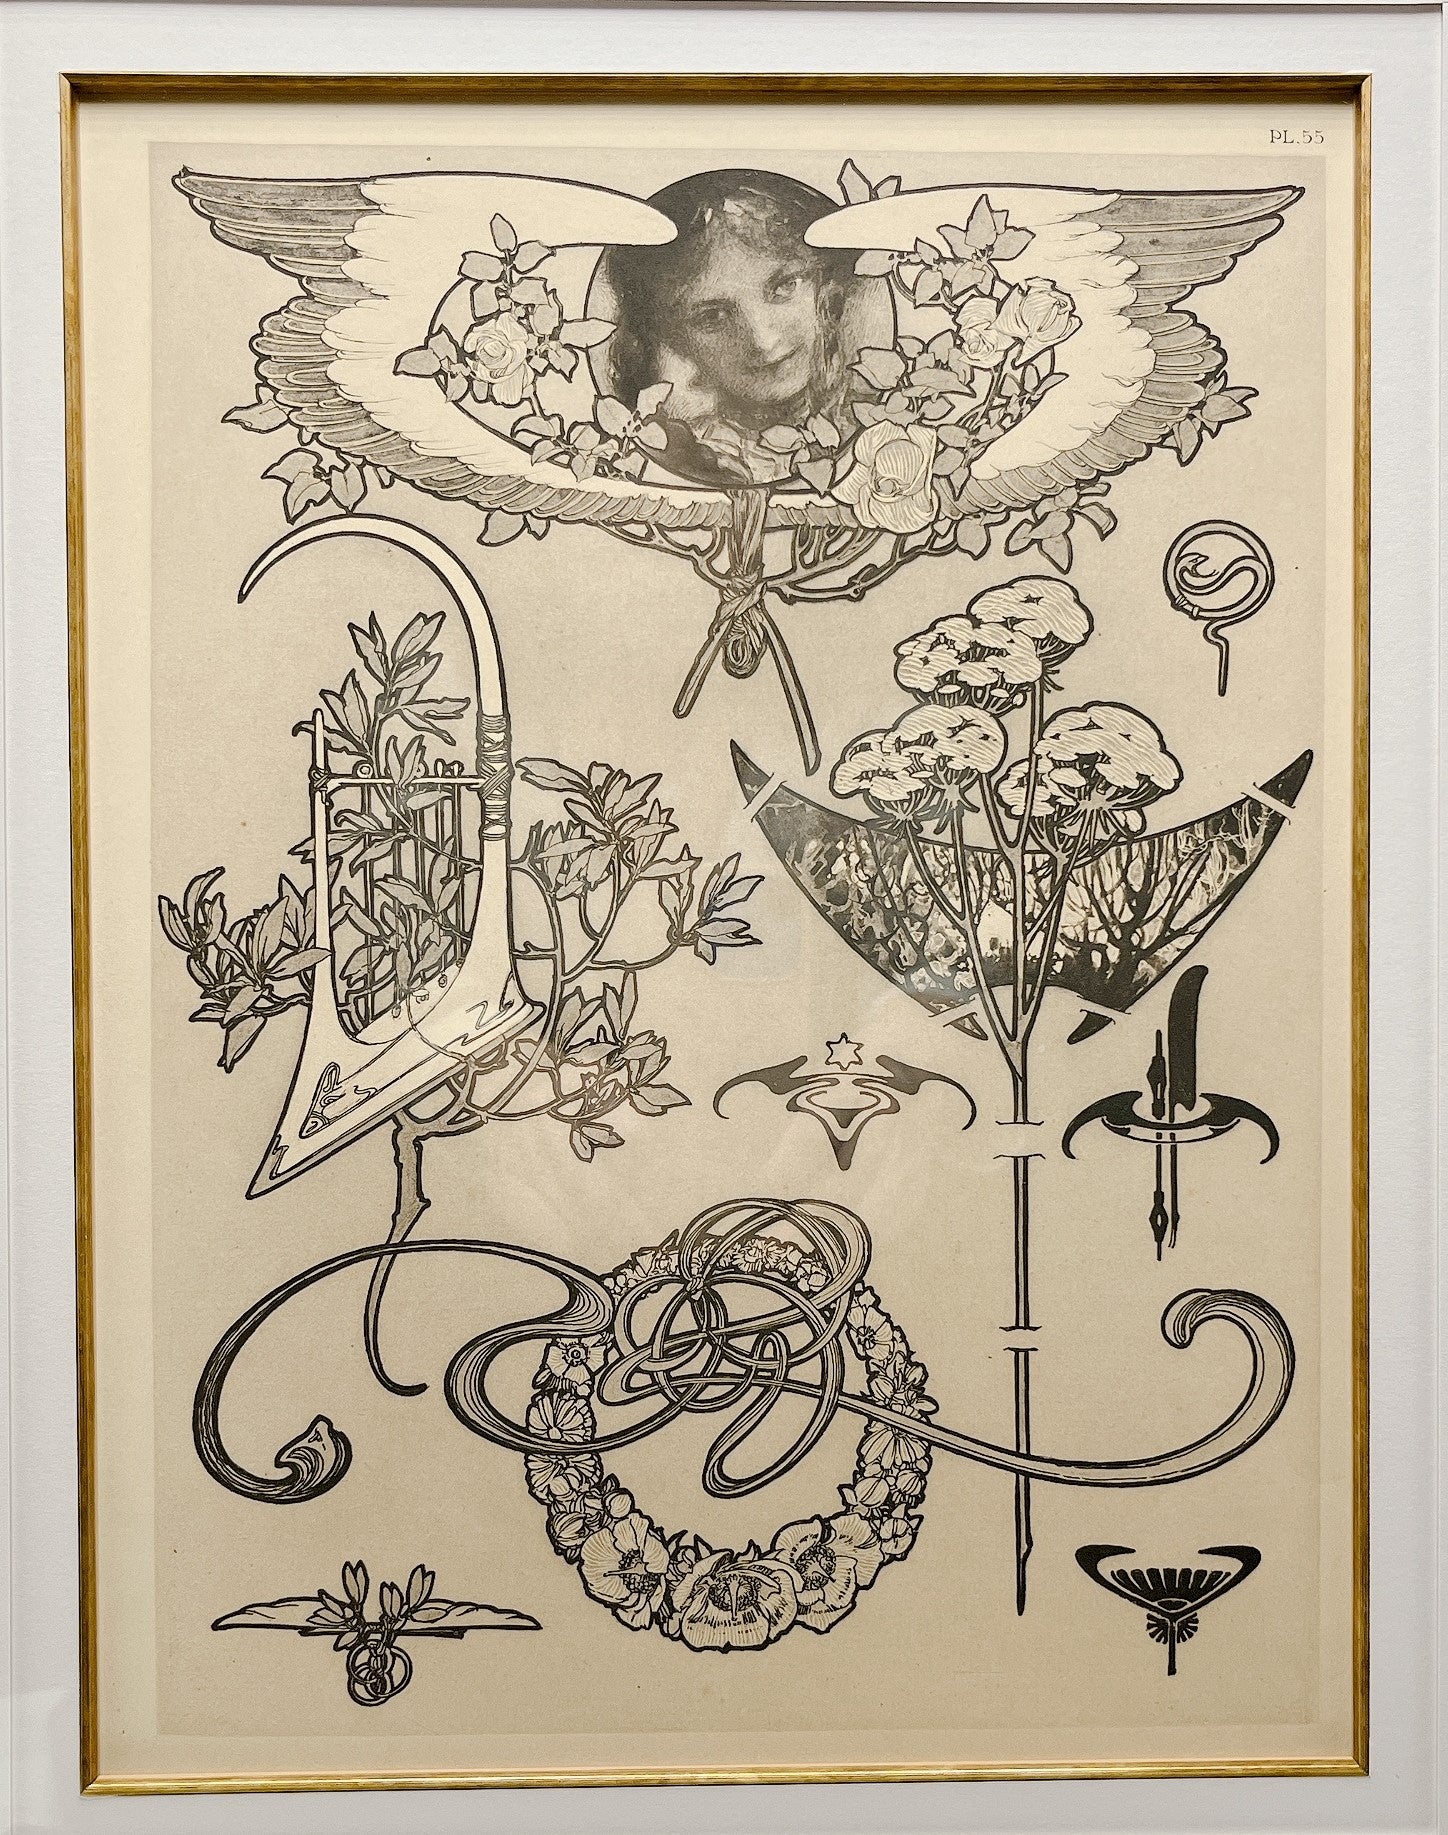 アルフォンス・ミュシャ、「装飾人物集」図31のための素描